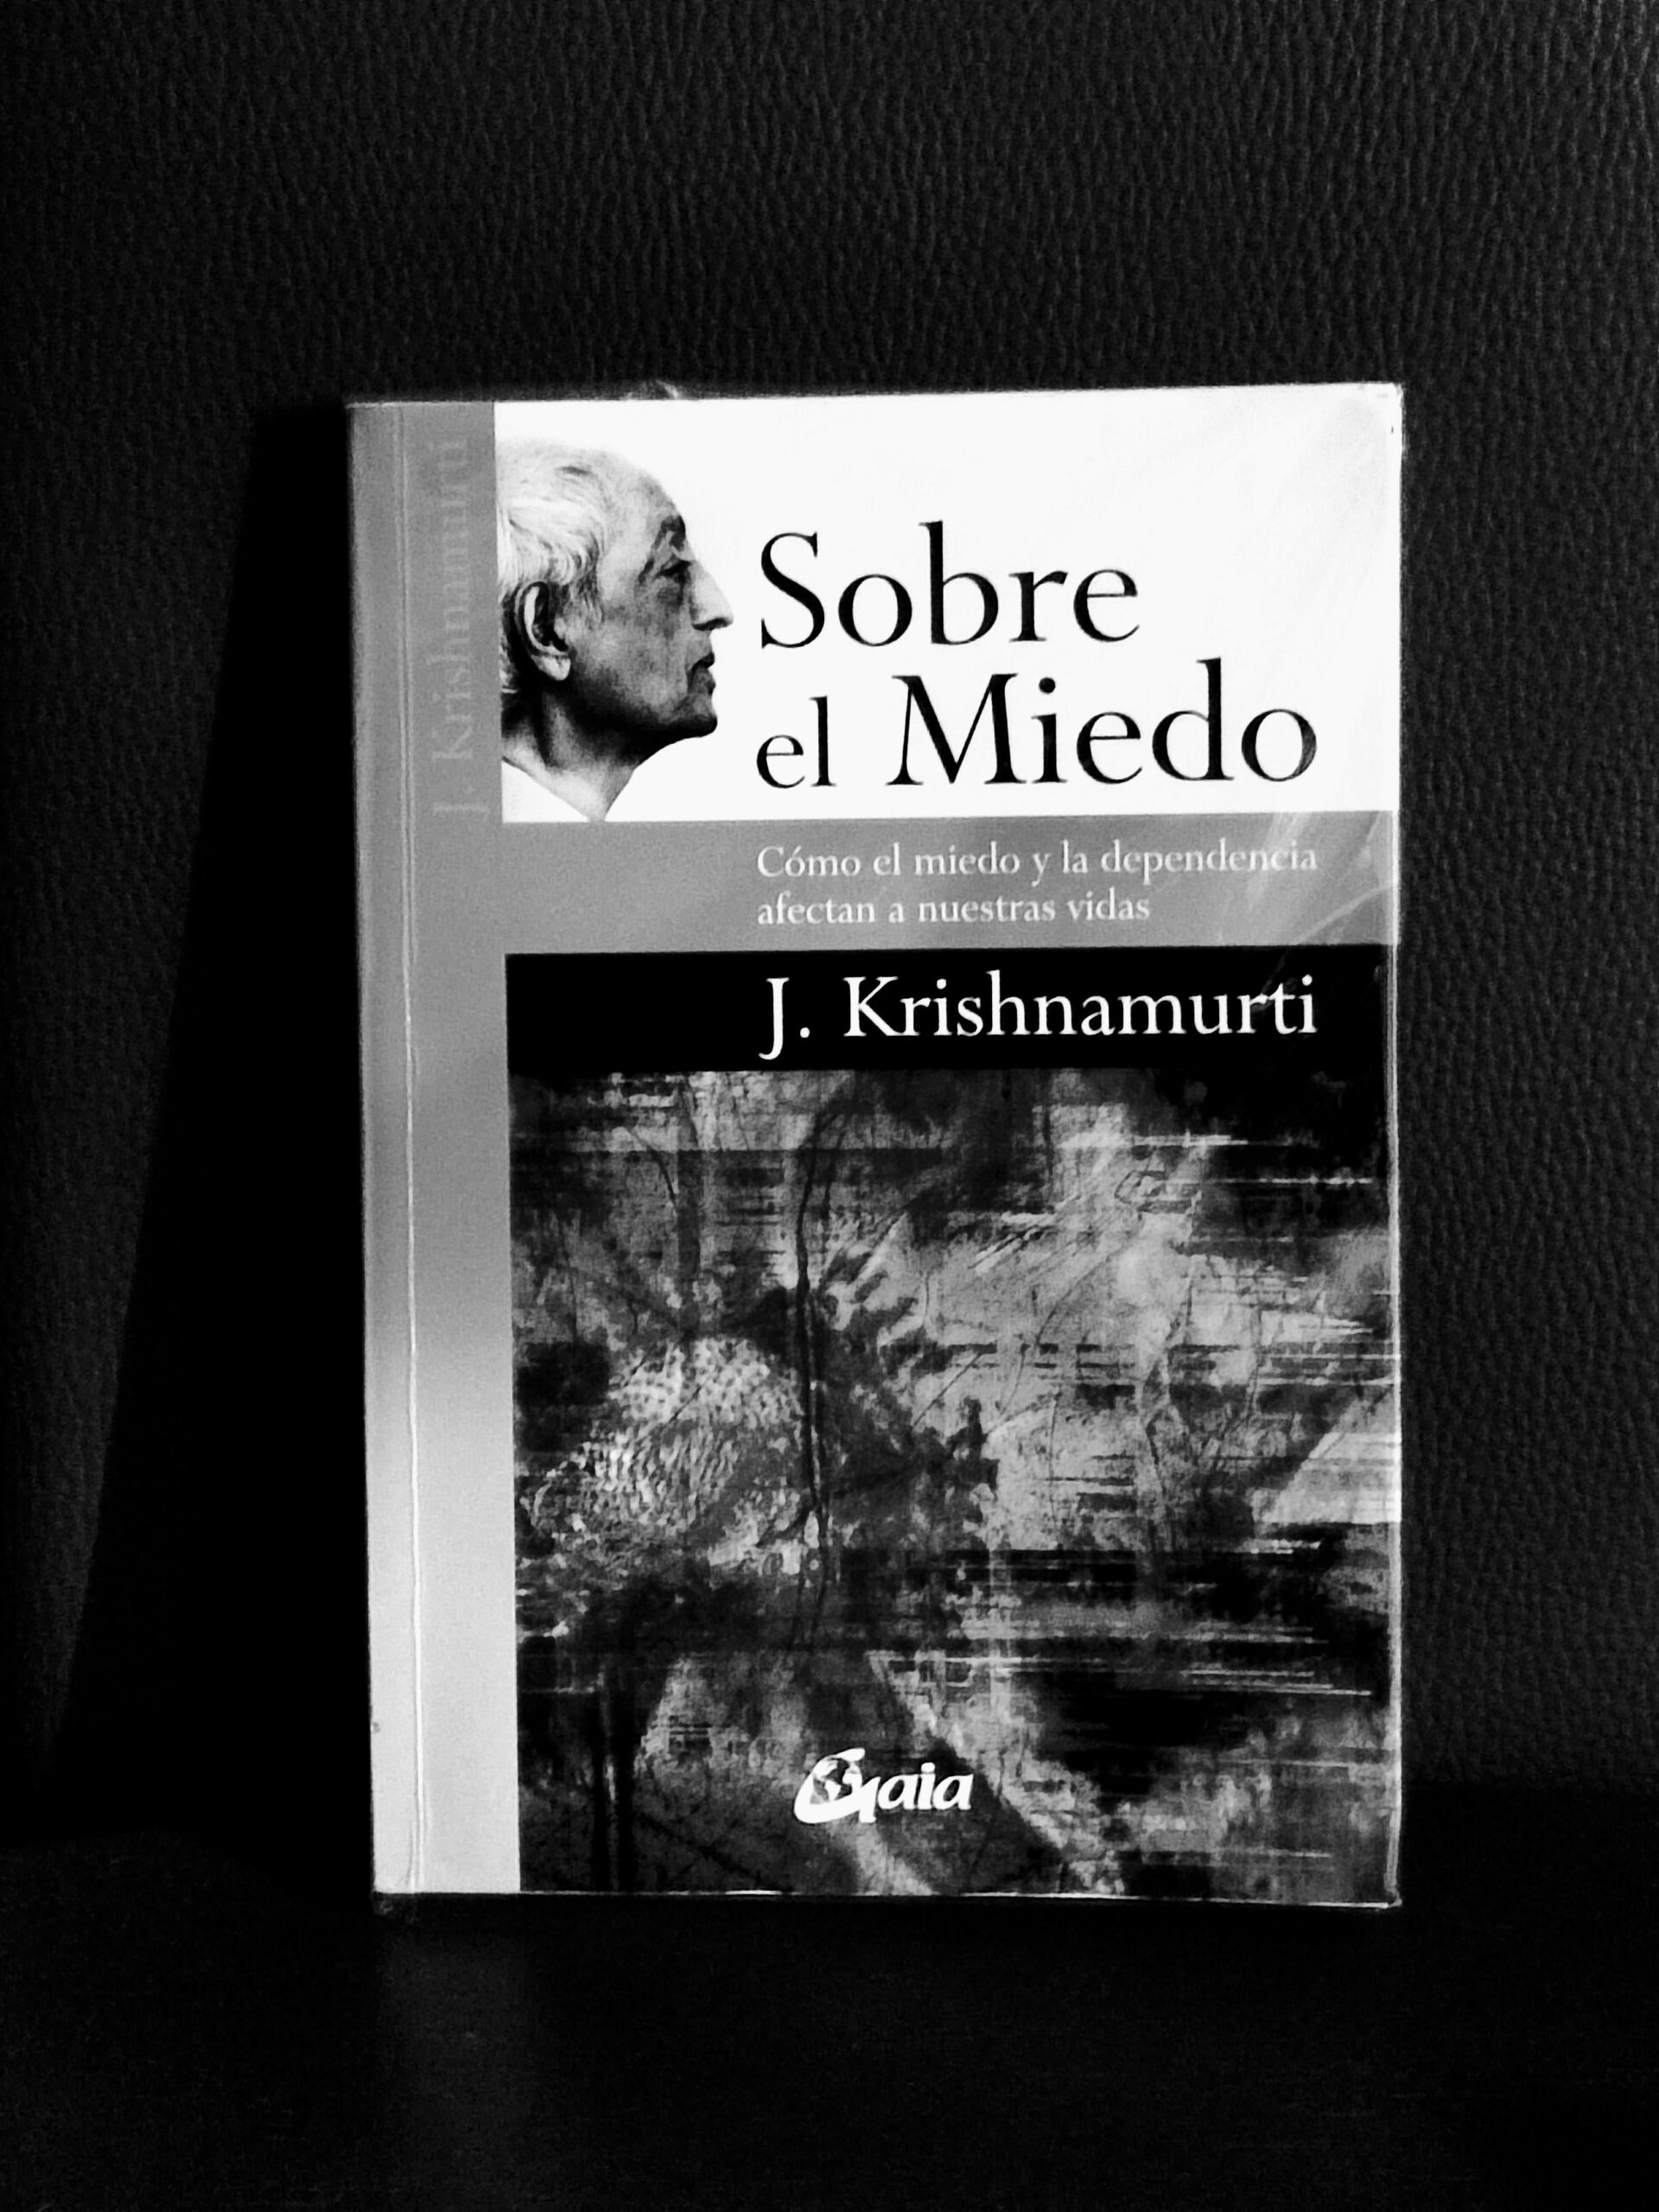 Reseña del libro de J. Krishnamurti «Sobre el miedo. Cómo el miedo y la dependencia afectan a nuestras vidas»